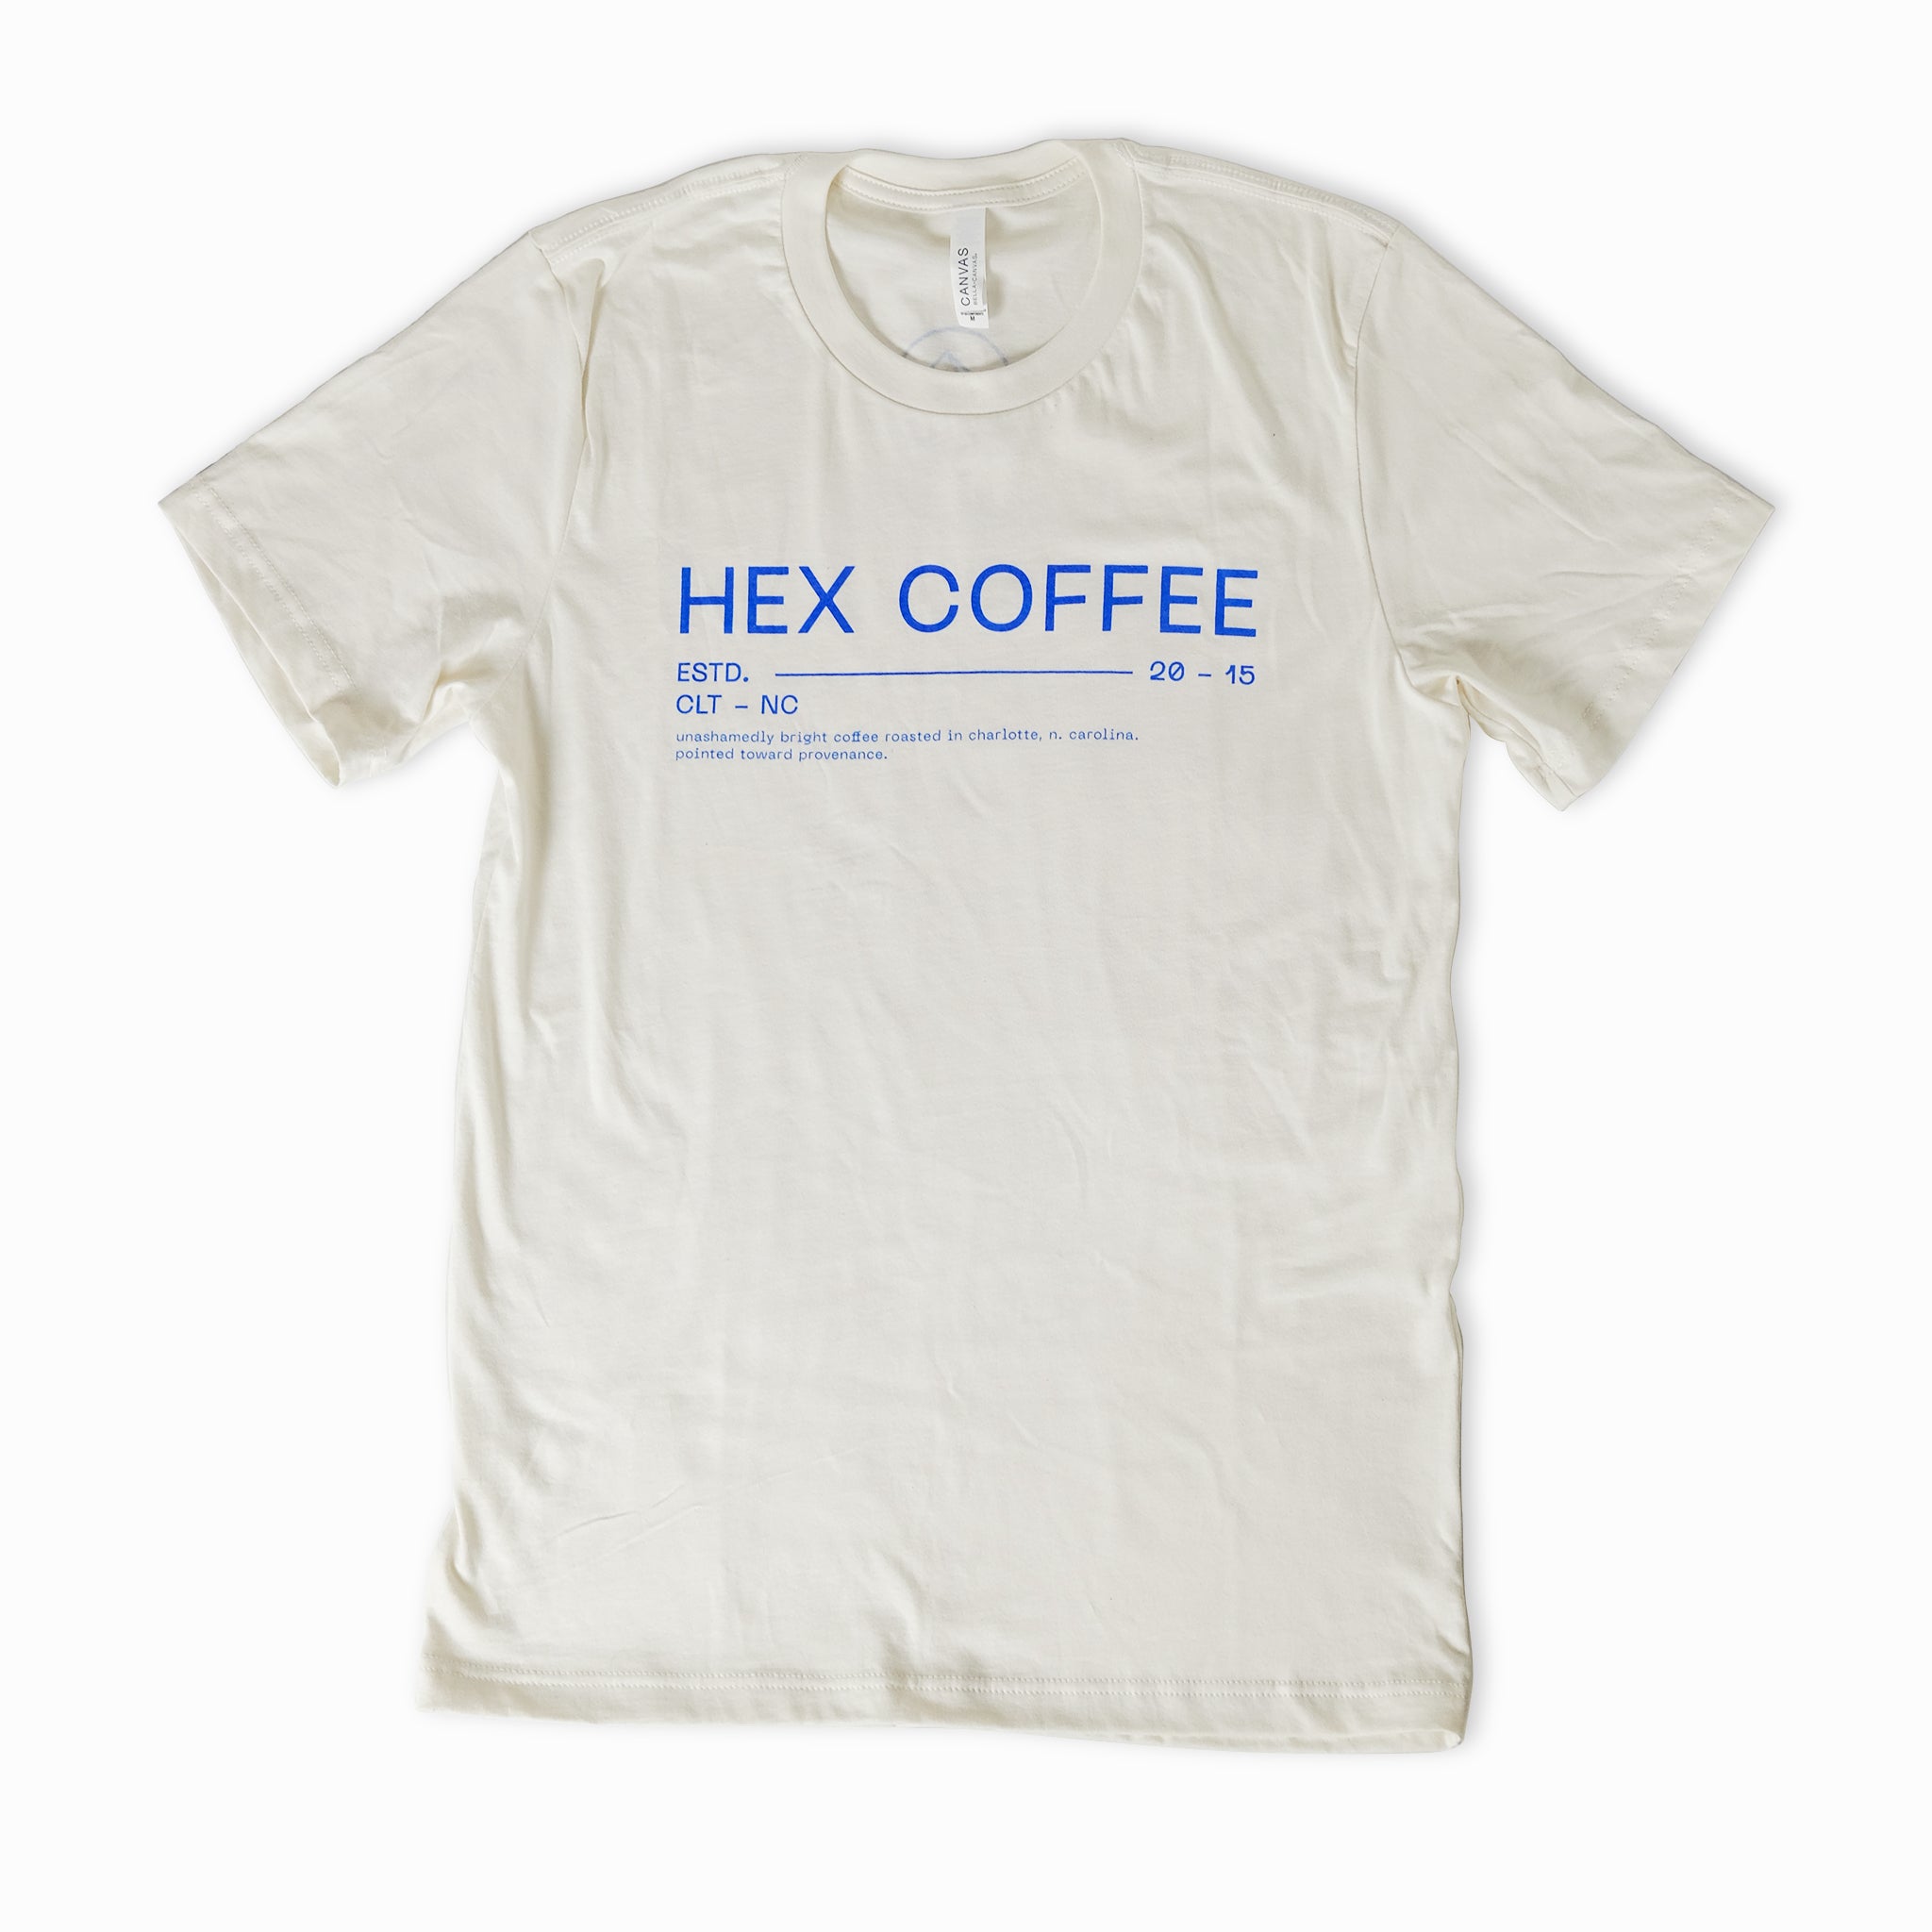 Typographic T-Shirt